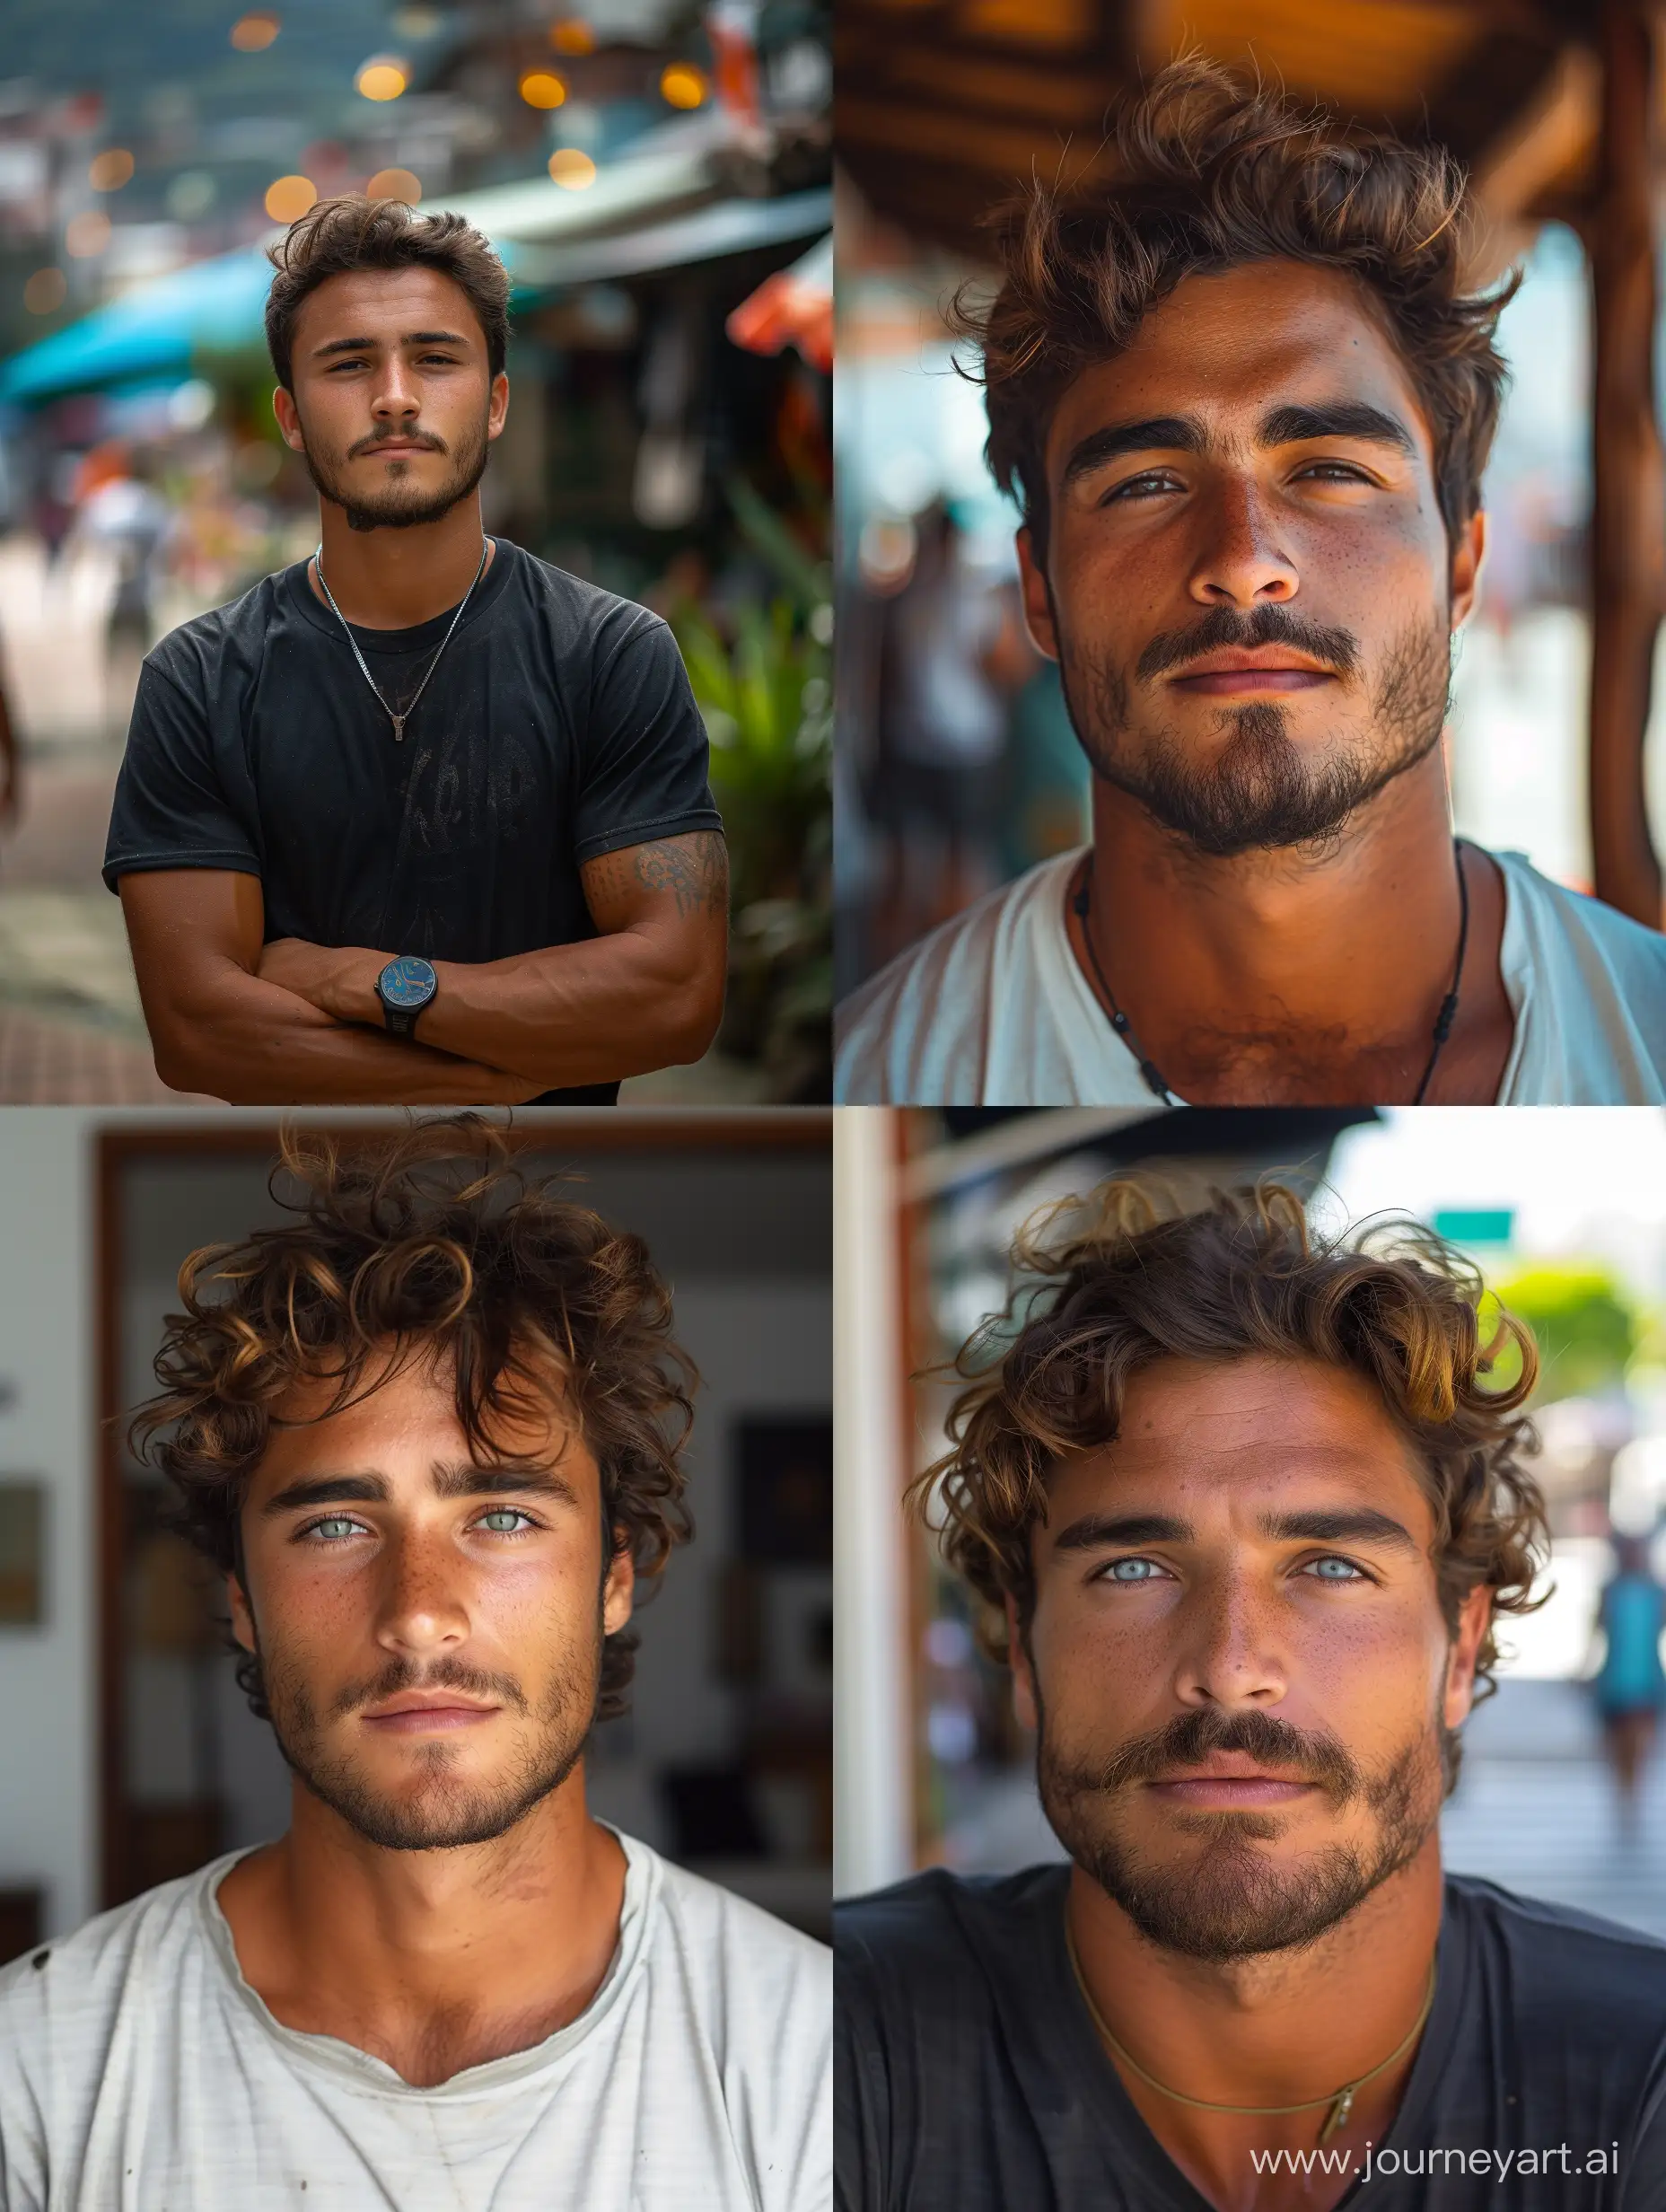 Young-Brazilian-Man-Portrait-in-Casual-Attire